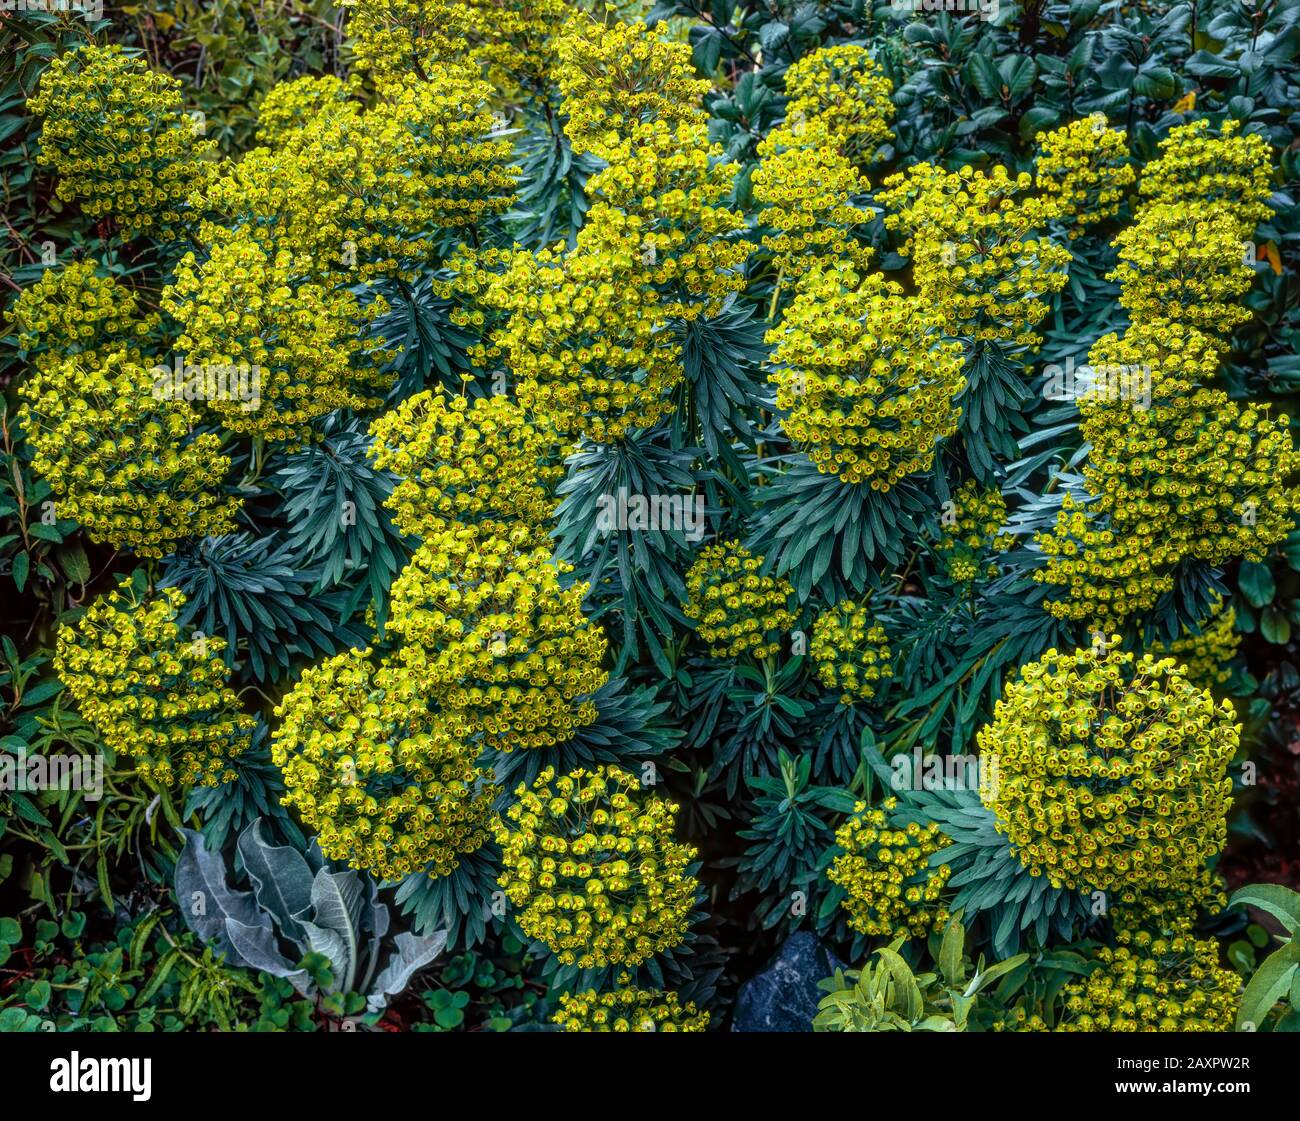 Euphorbia, Euphorbia amygdaloides, Fern Canyon Gardens, Mill Valley, California Stock Photo